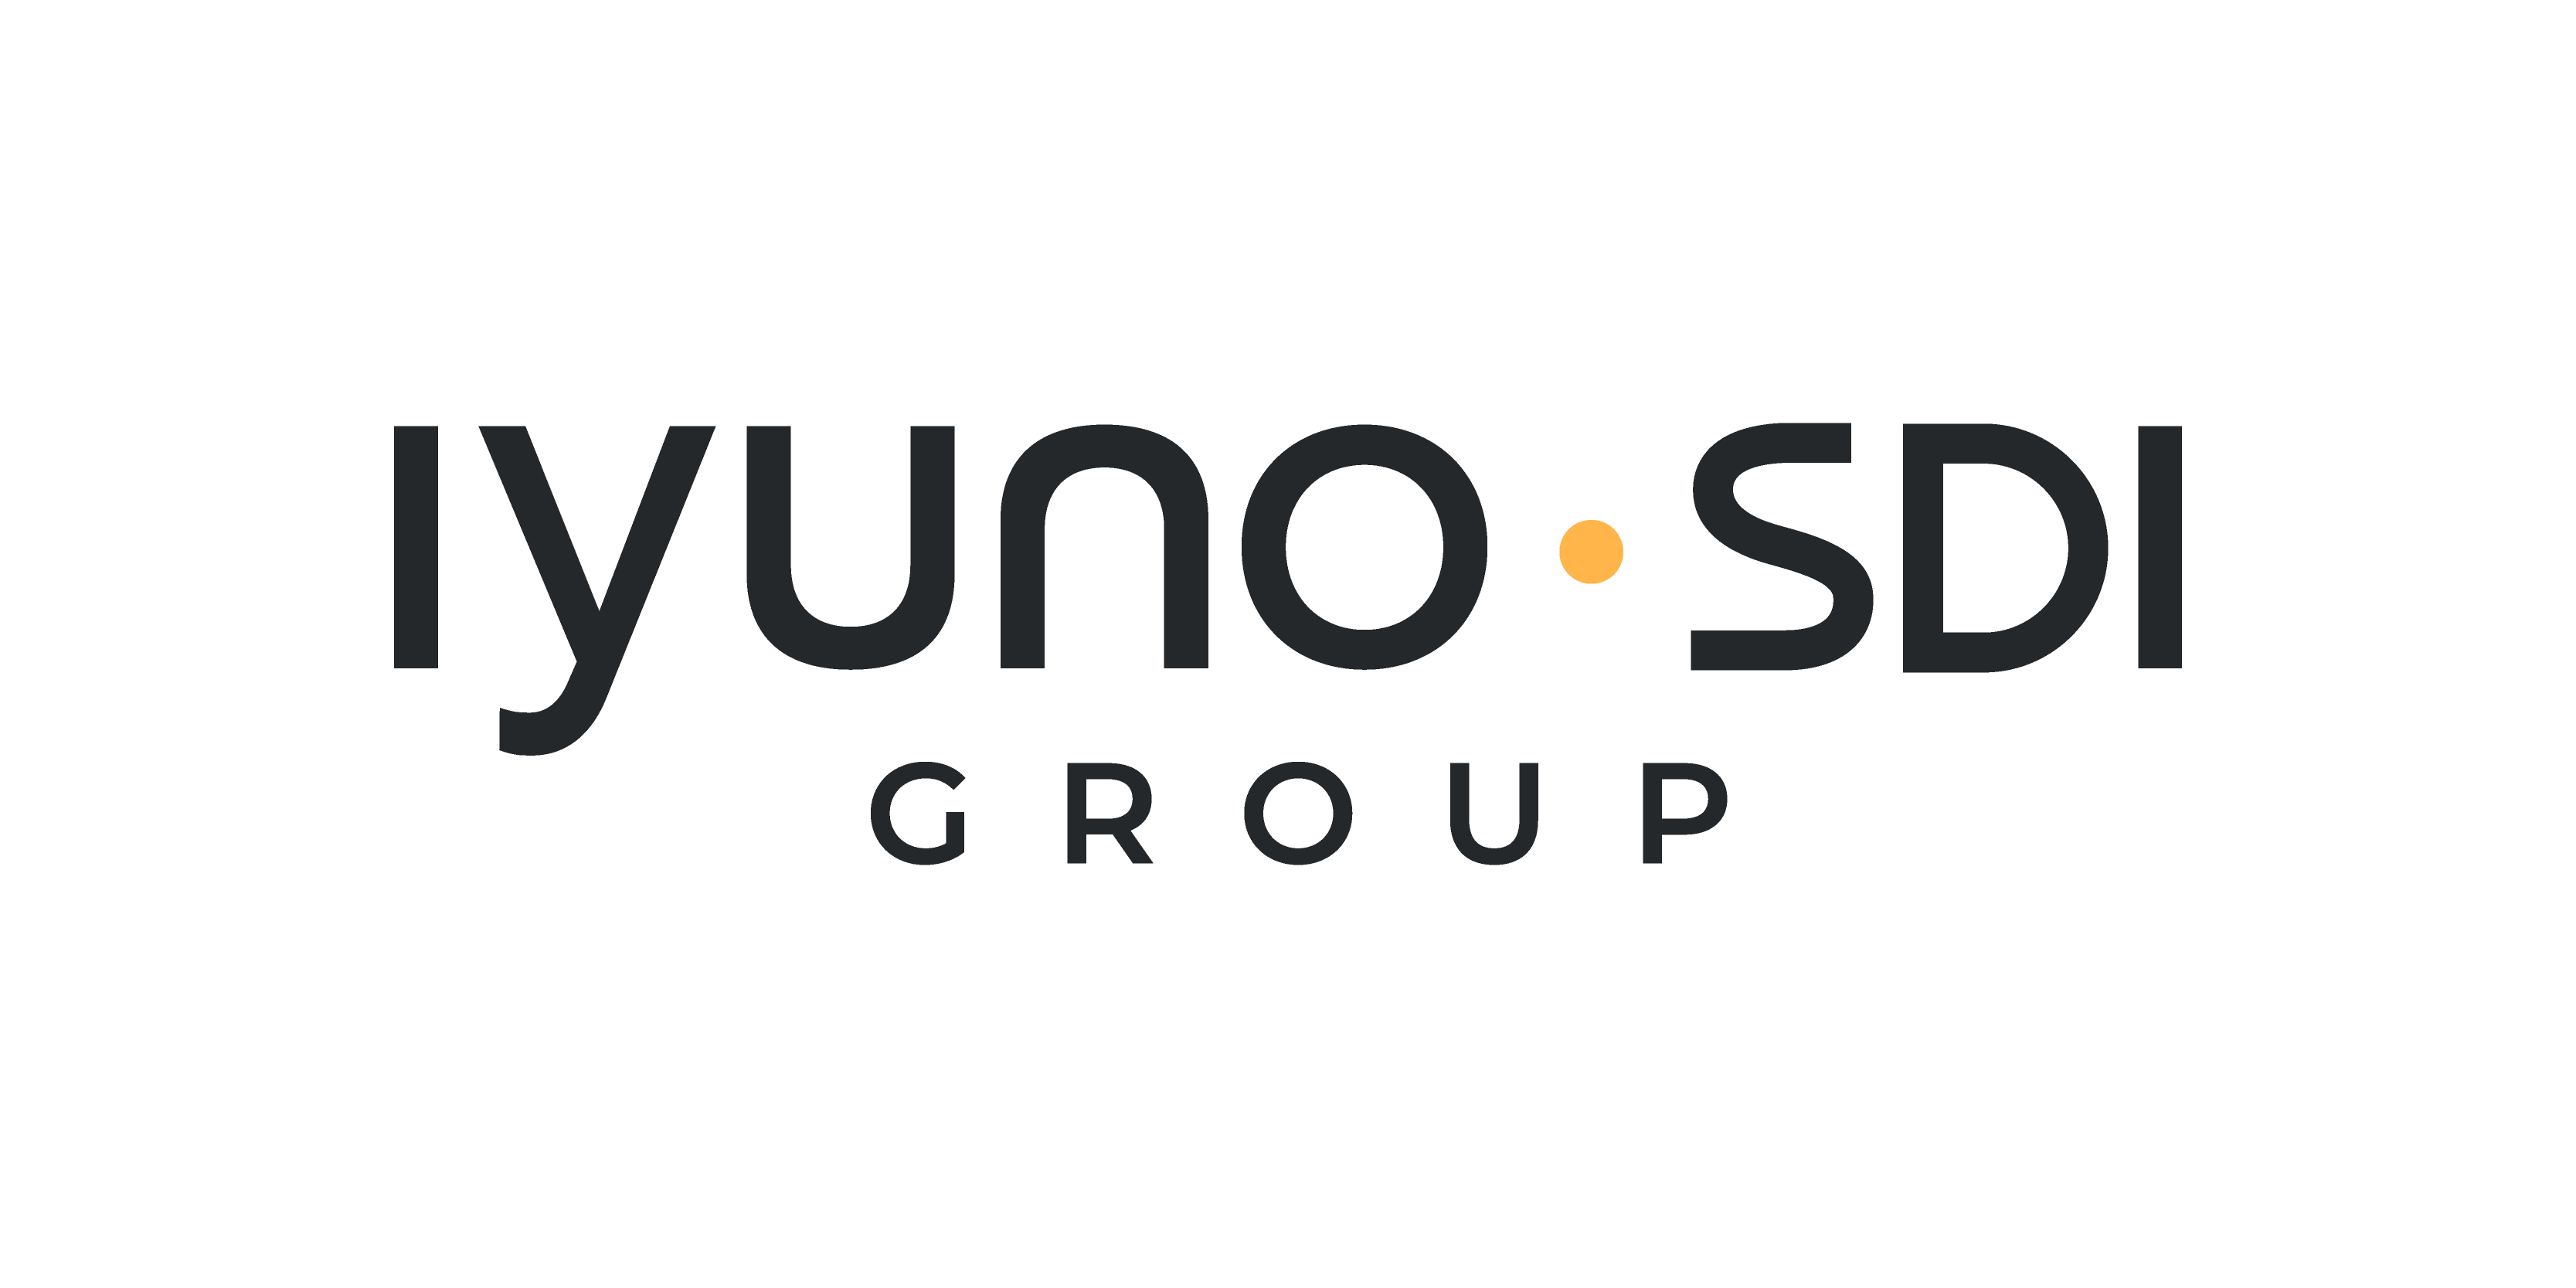 Operations Manager sökes till dubbningsföretaget Iyuno-SDI Group!